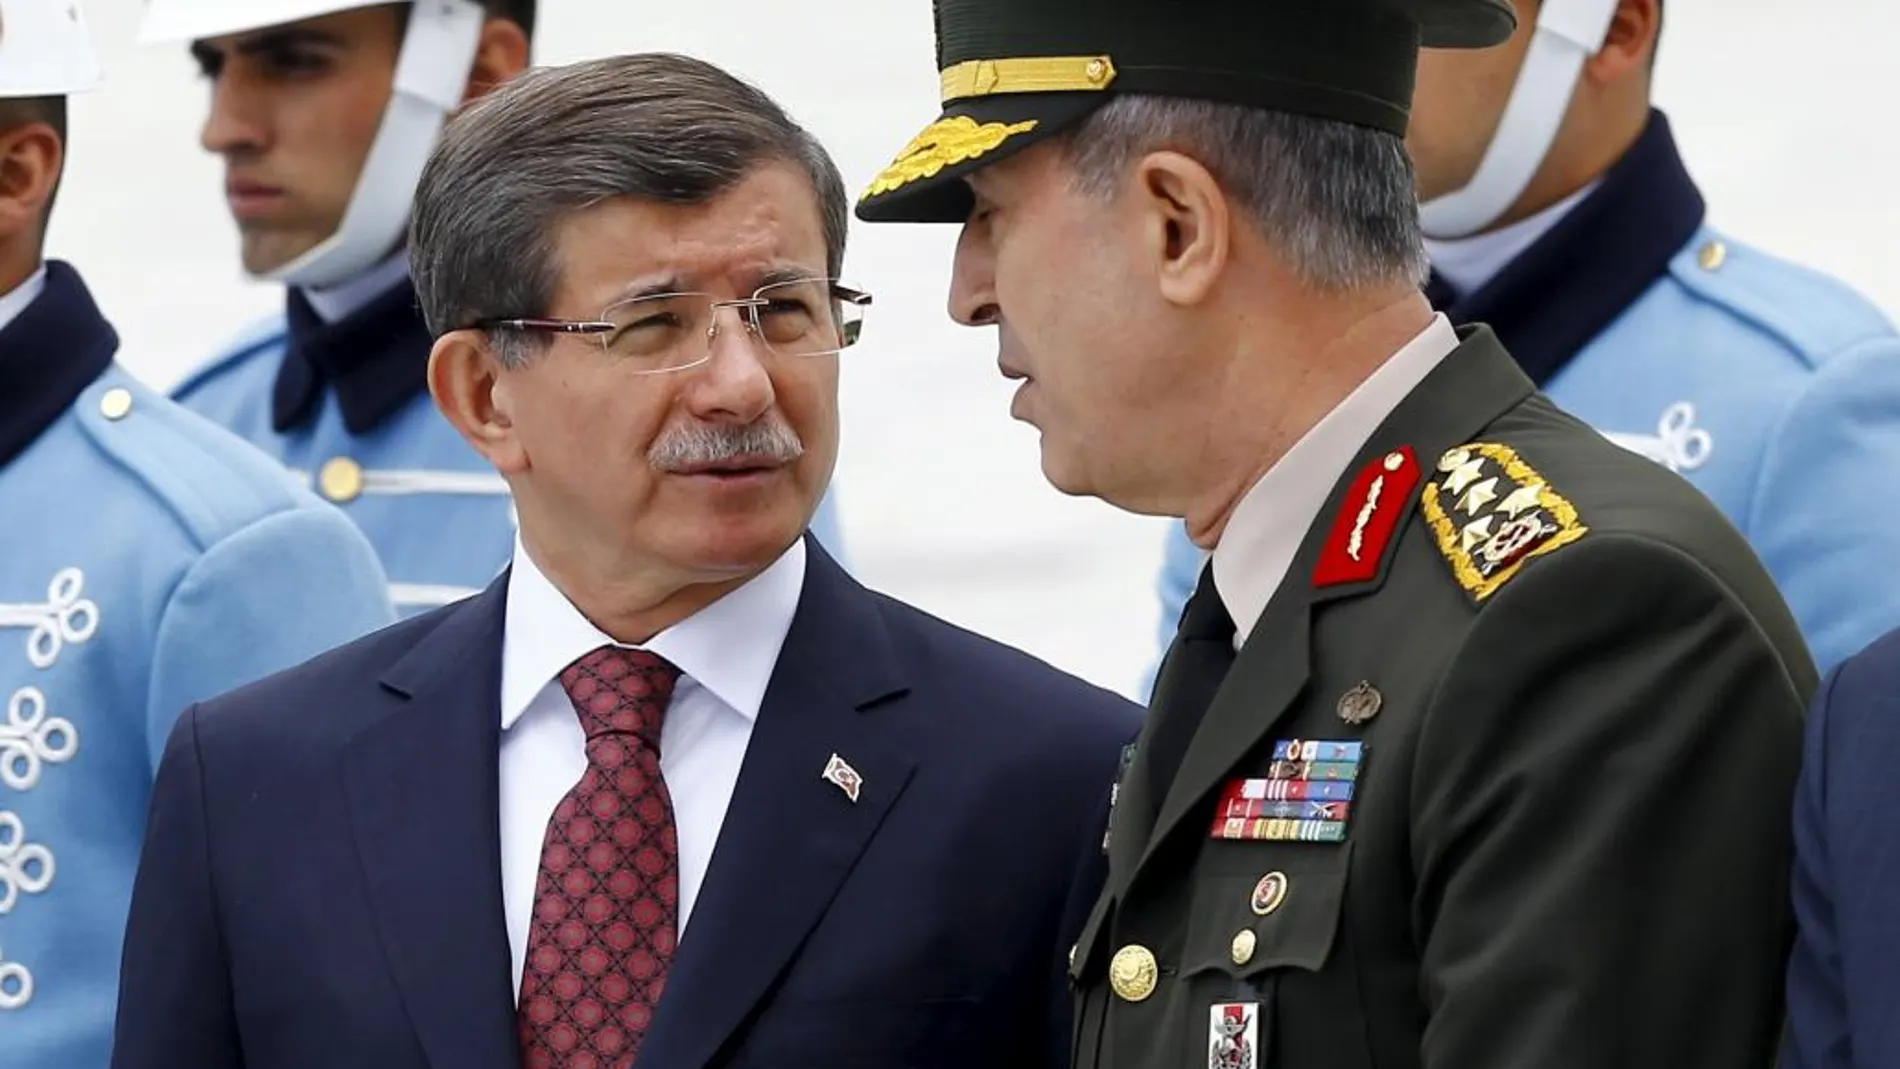 El jefe del Estado Mayor de Turquía, Hulusi Akar, ha sido rescatado este sábado por la mañana,